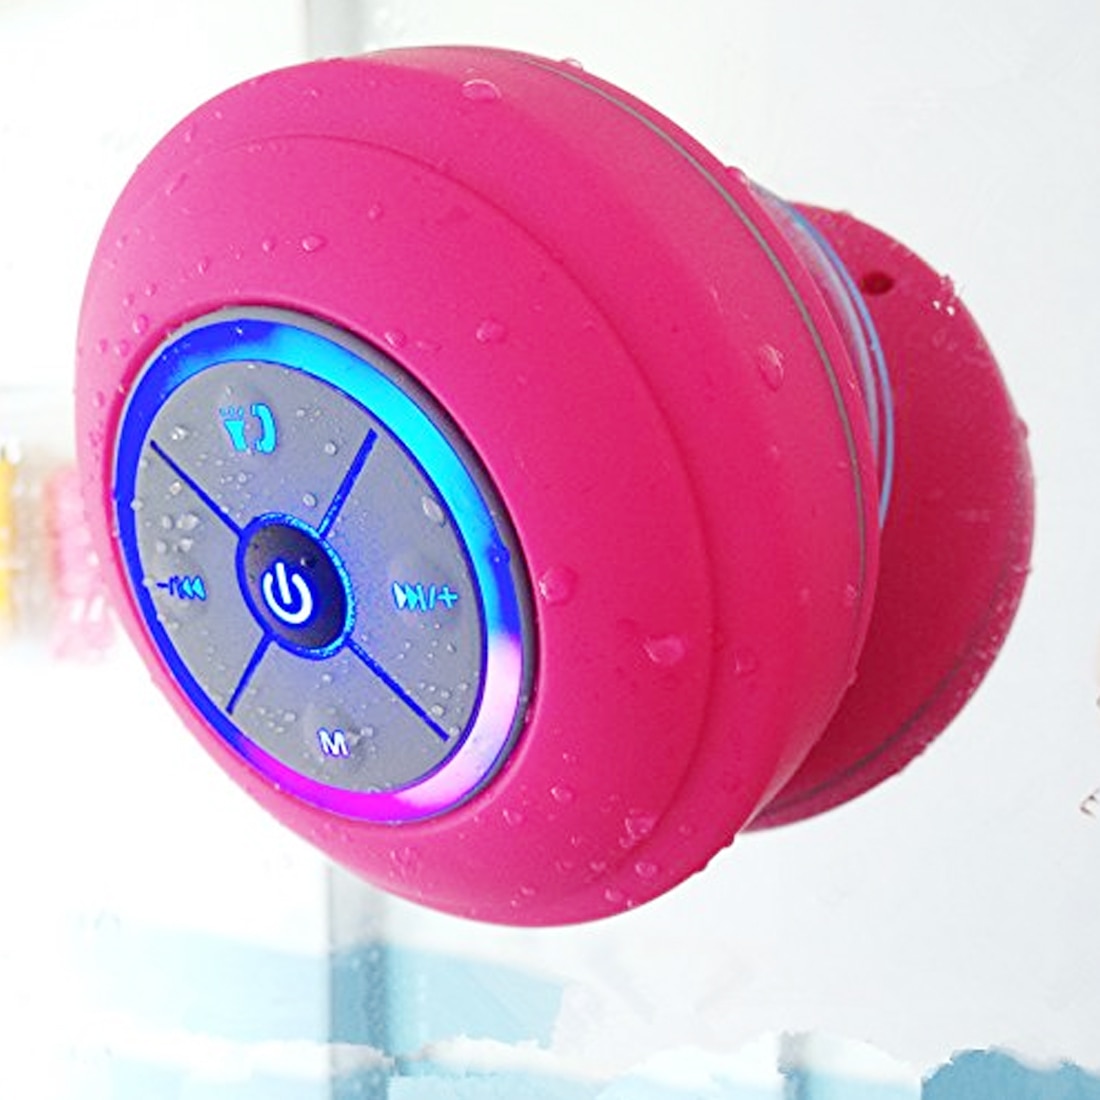 Draadloze Bluetooth Speaker Waterdichte Speakers Handsfree Speaker Voor Douche Badkamer Zwembad Subwoofer Muziek Luidspreker Voor Auto